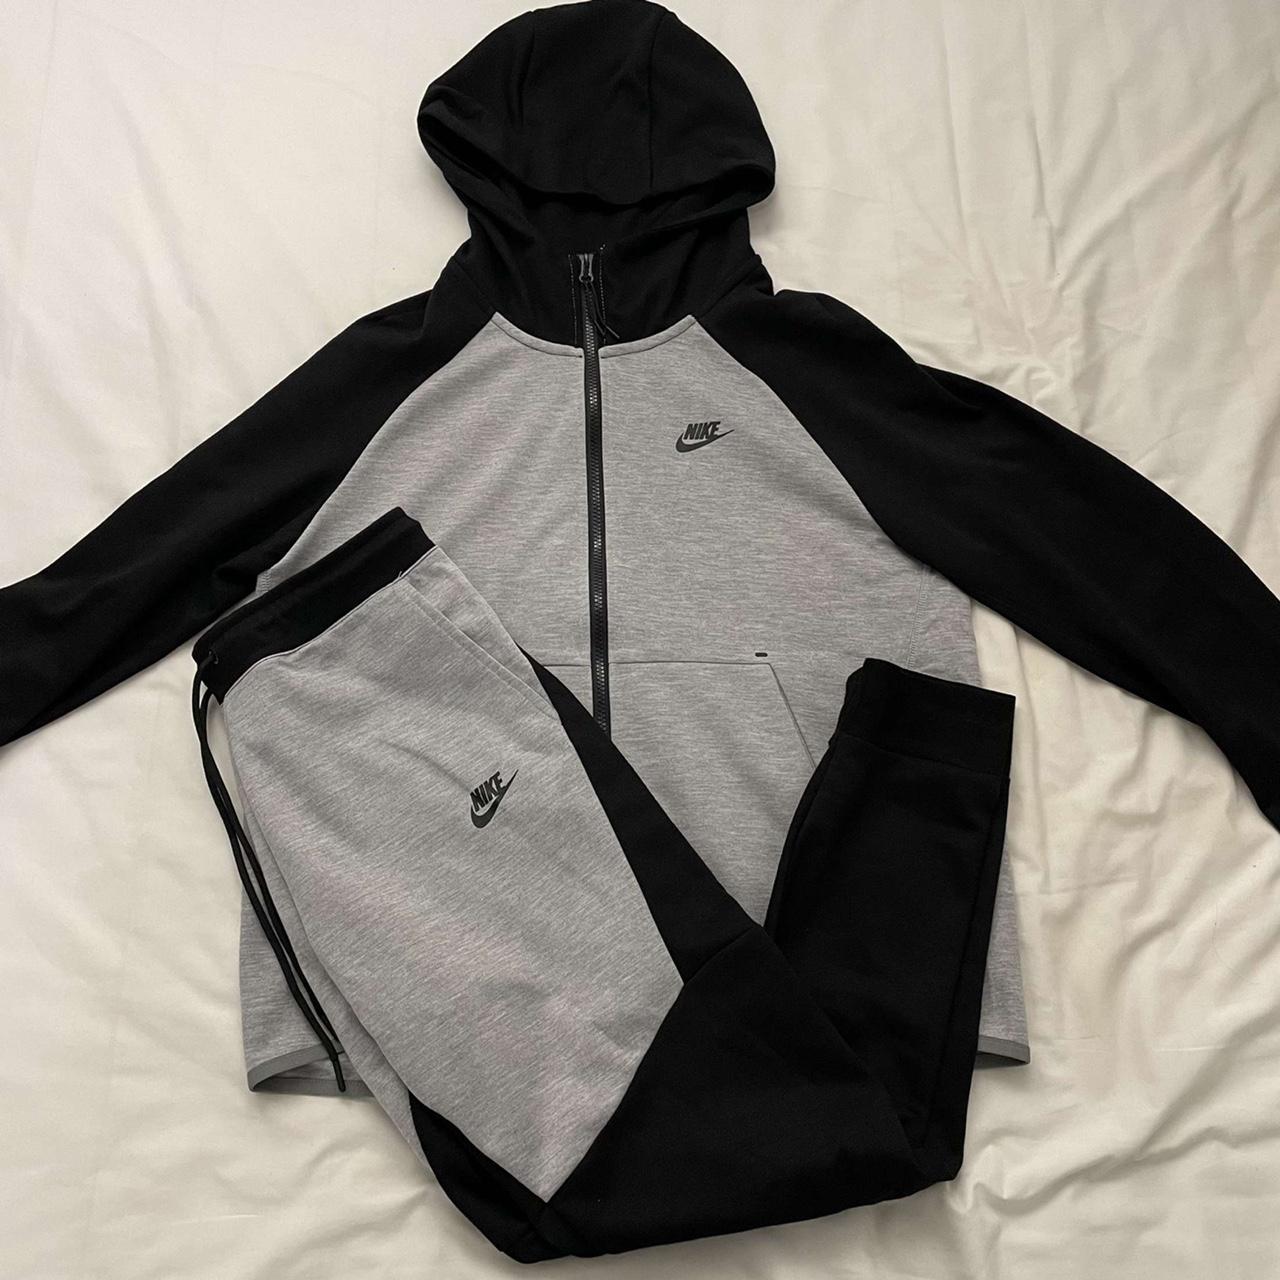 Nike tech fleece old season #N#Size: XS#N#Grey/Black - Depop